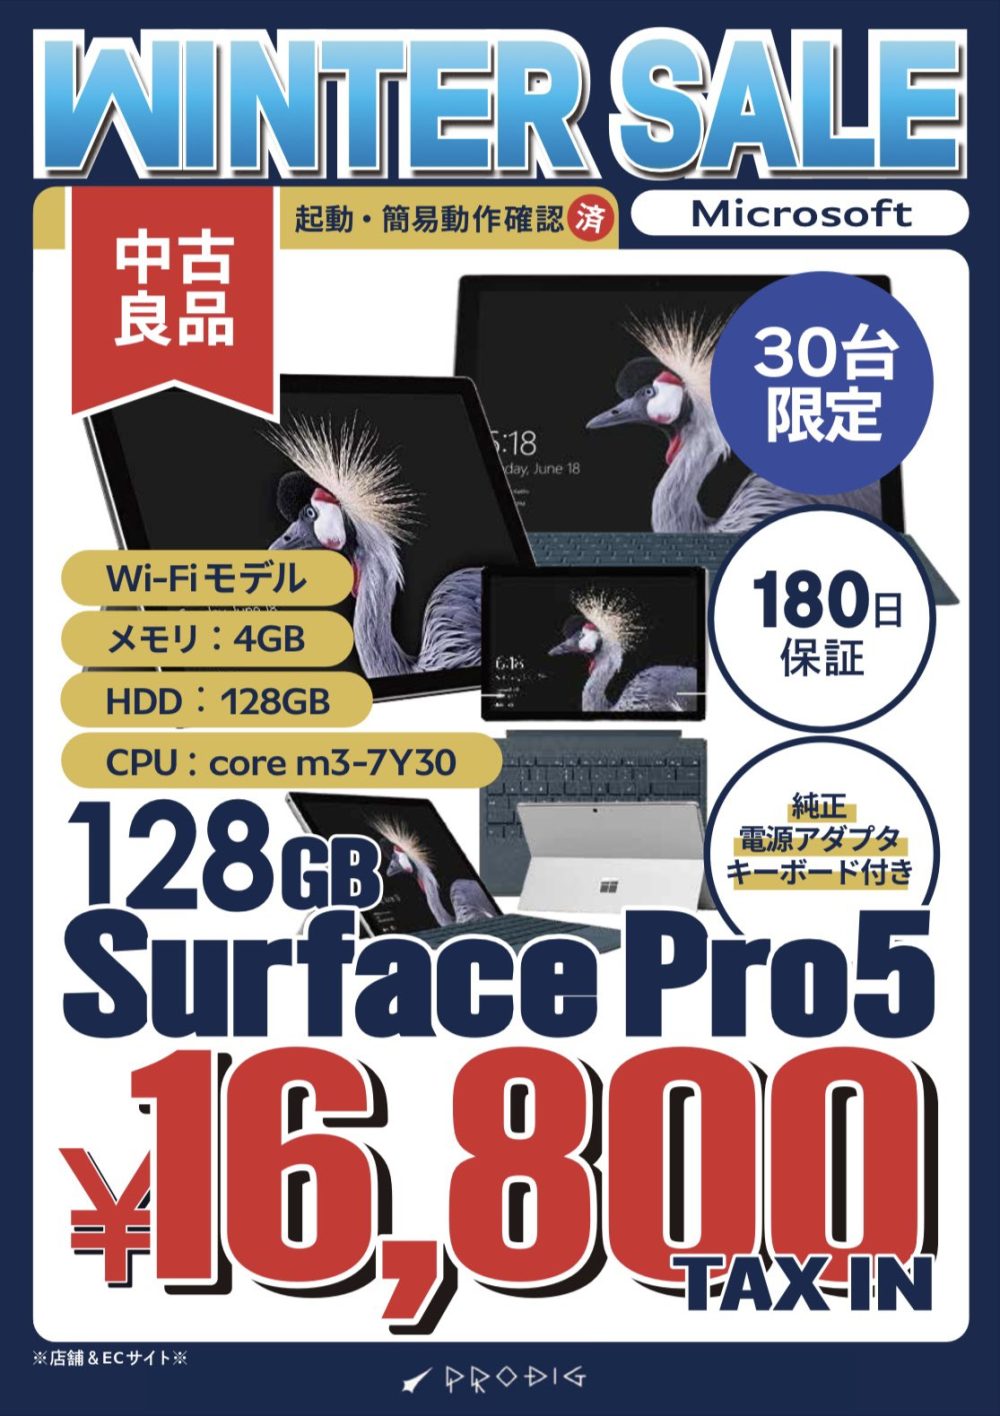 タイプカバー付きSurface Pro 5中古が16,800円でセール開始！